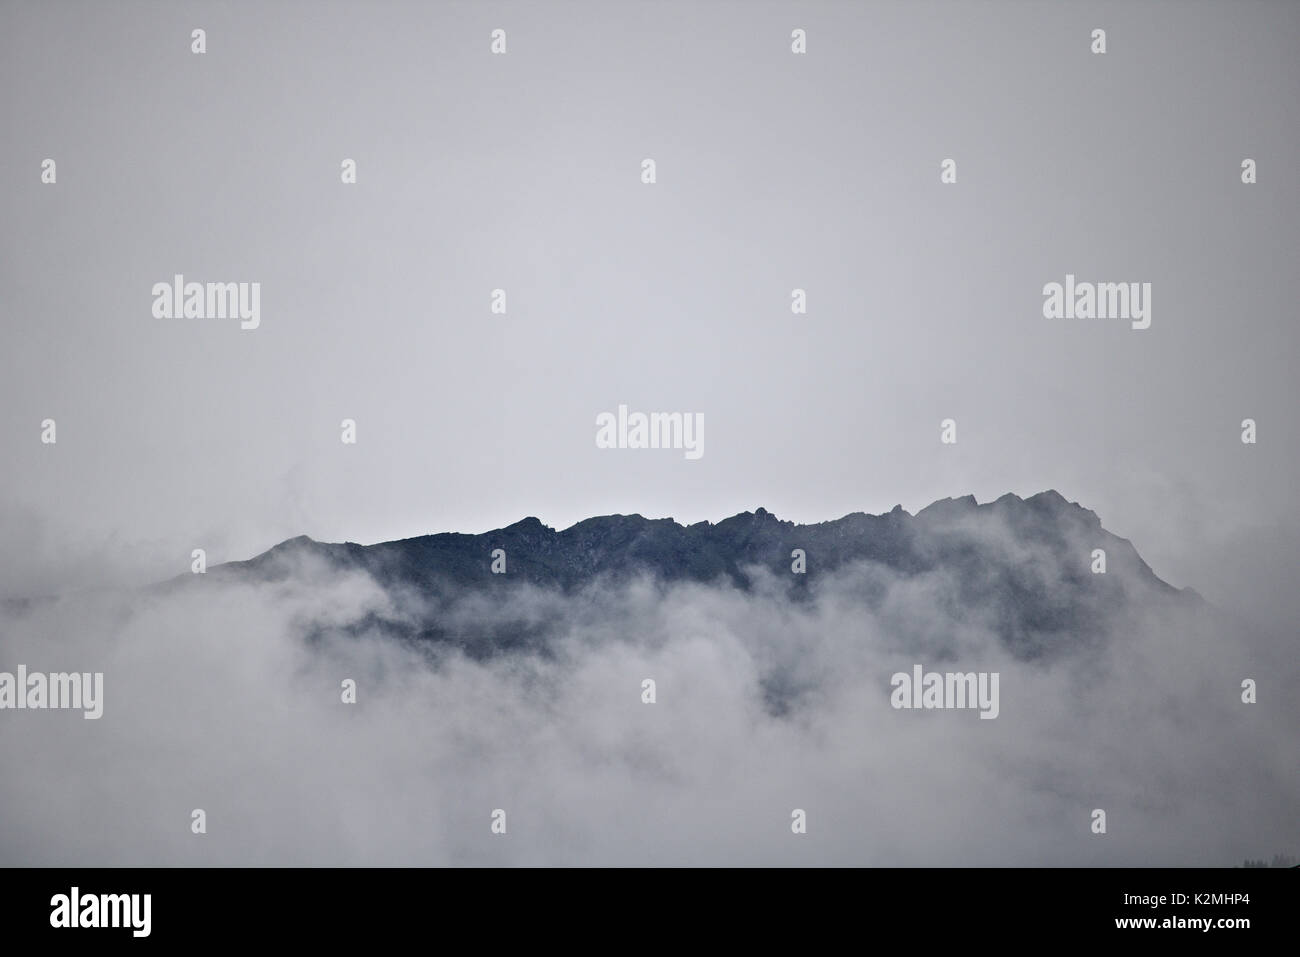 La crête de la montagne lointaine à peine visible au-dessus des nuages et de la brume Banque D'Images